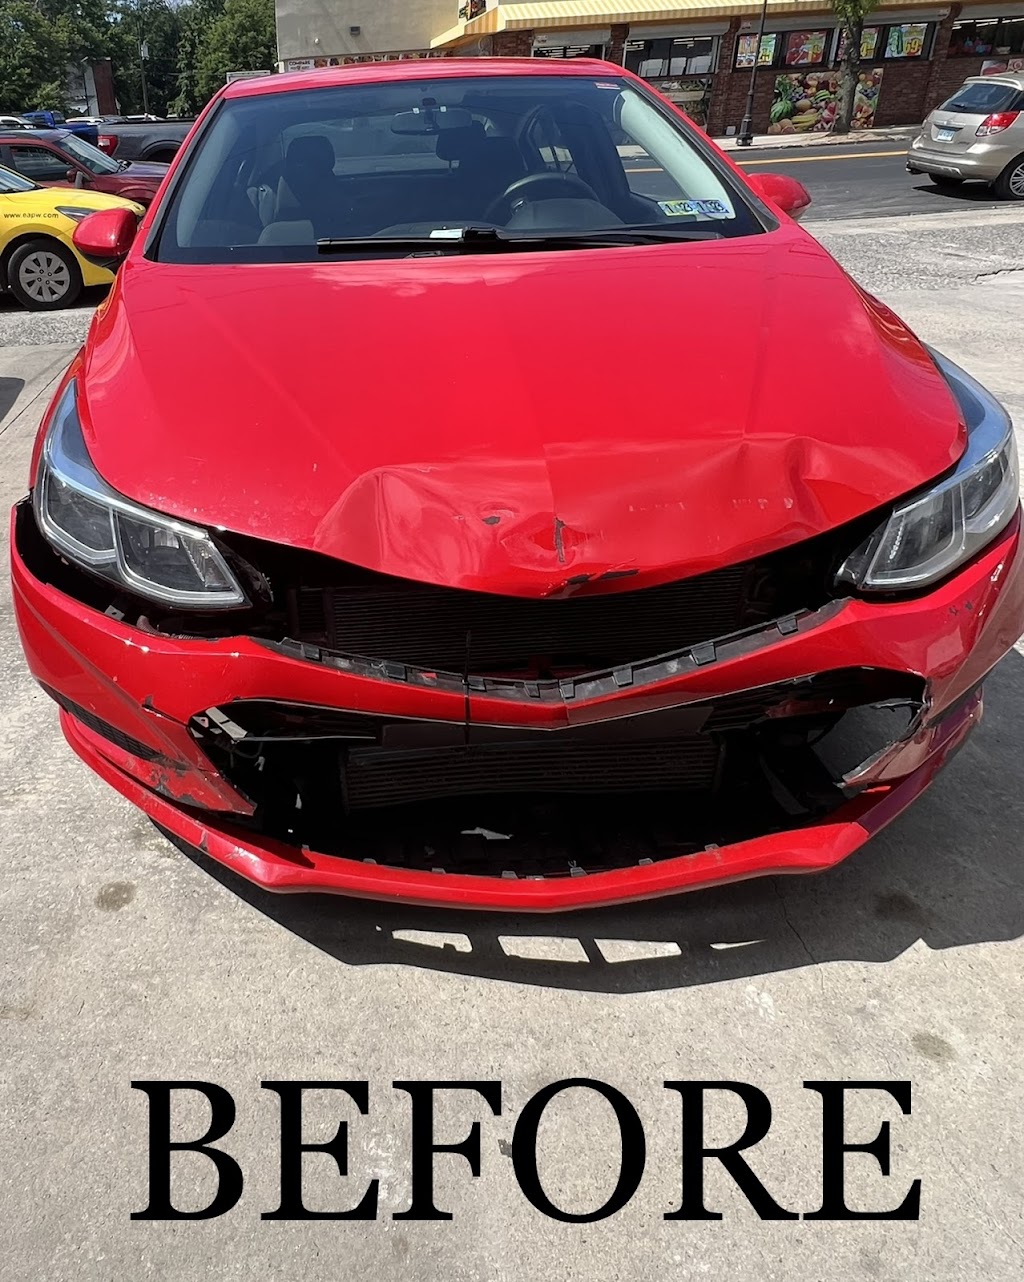 Sergios Auto Repair | 1241 Hamilton Ave, Trenton, NJ 08629 | Phone: (609) 396-0559